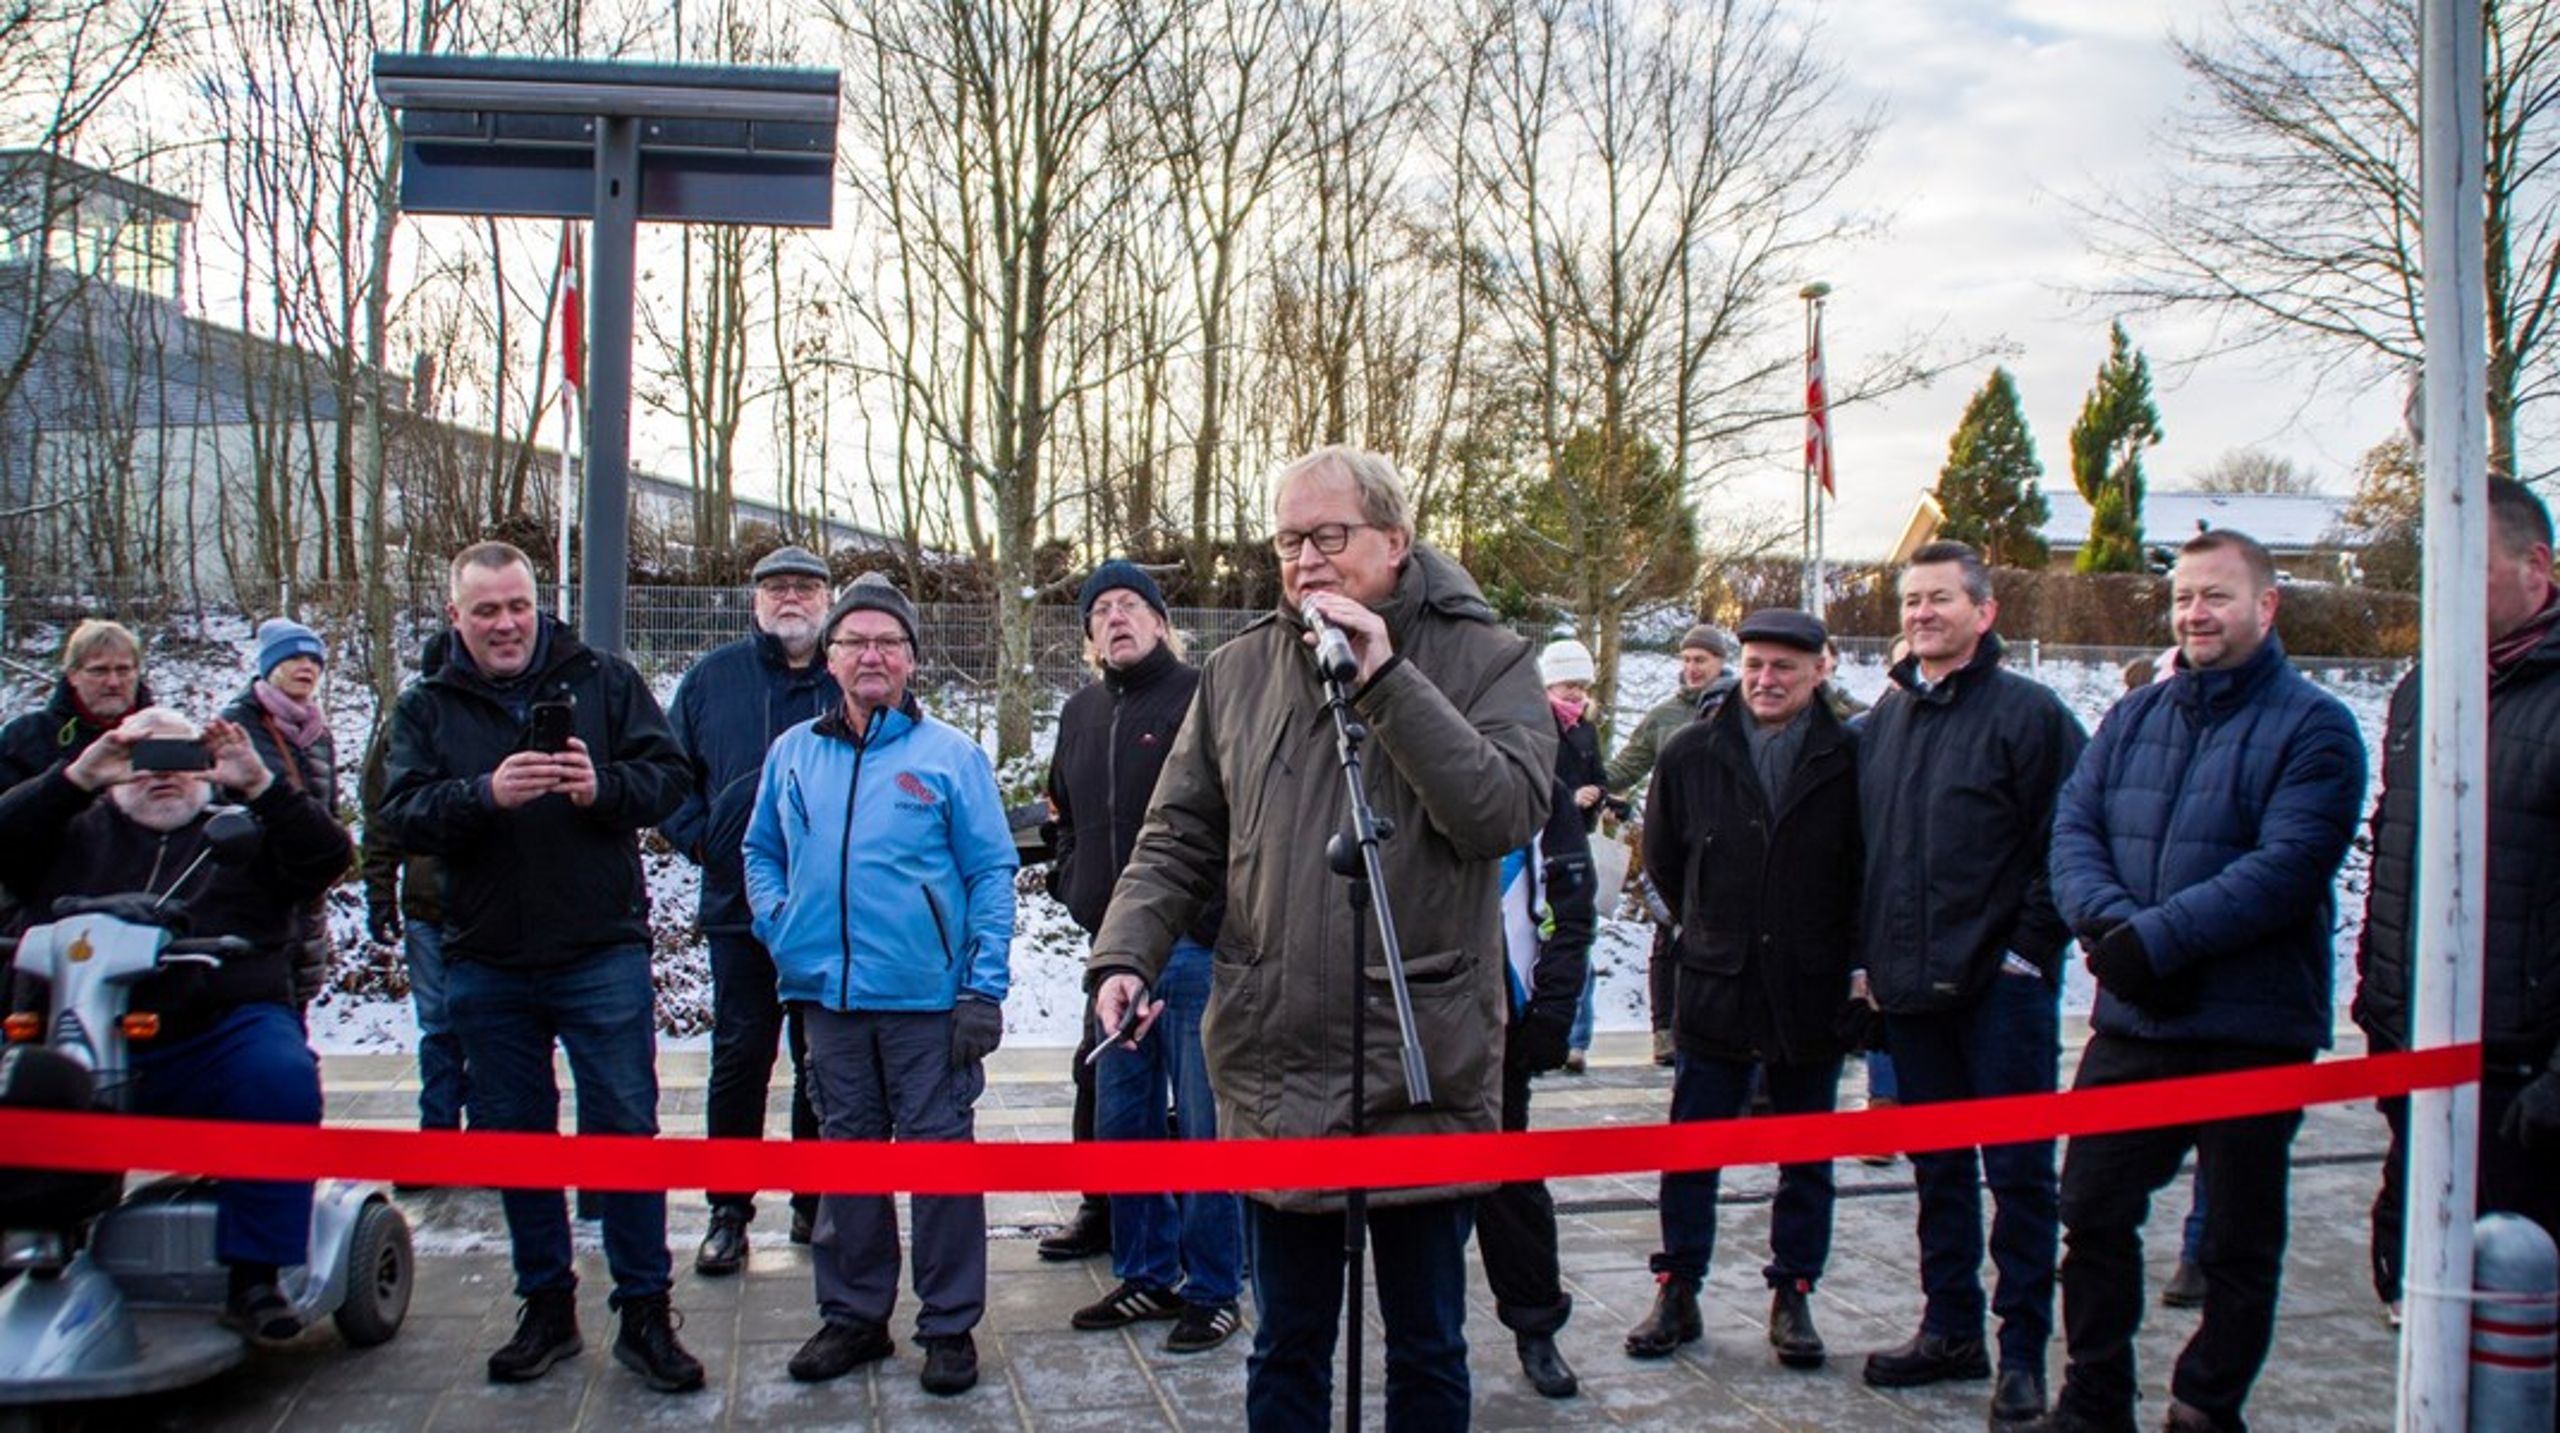 Viborgs borgmester Ulrik Wilbek (V) klipper den røde snor over til indvielsen af Sparkærs nye togstop.